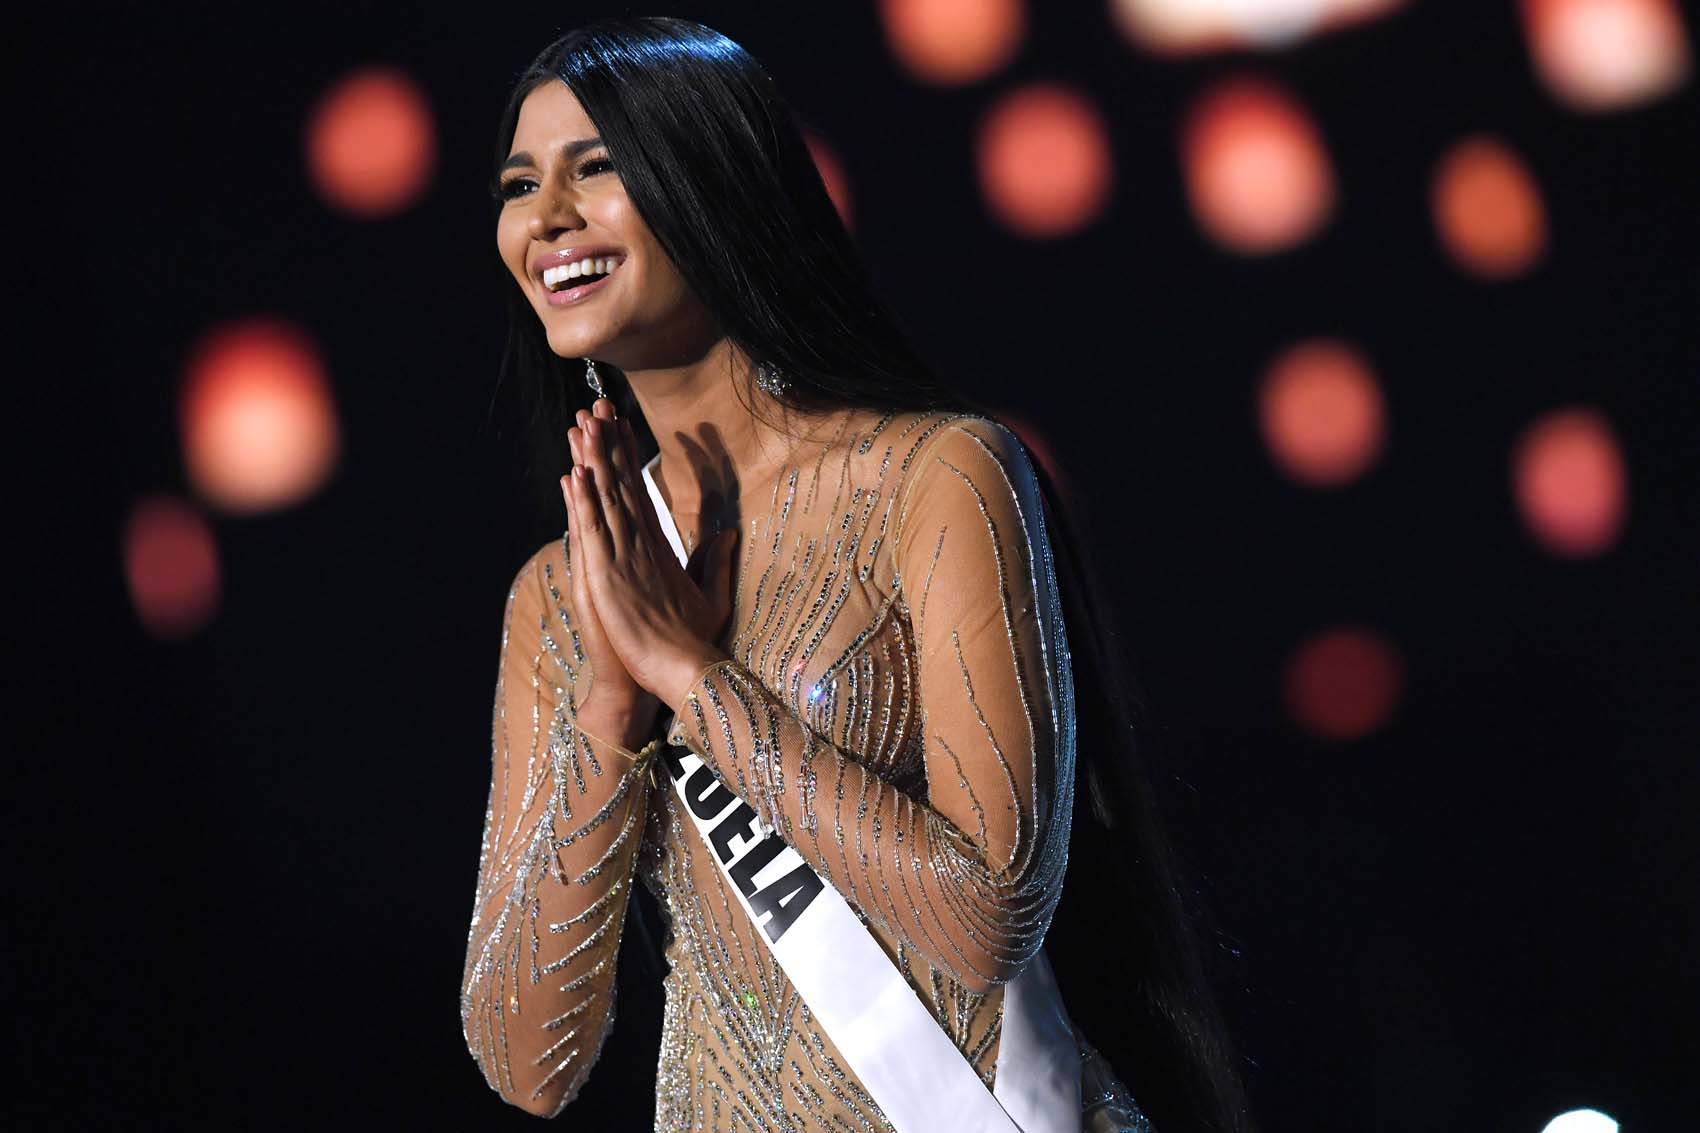 Sthefany Gutiérrez, segunda finalista en Miss Universo, fue recibida en Venezuela entre gritos y aplausos (VIDEO)